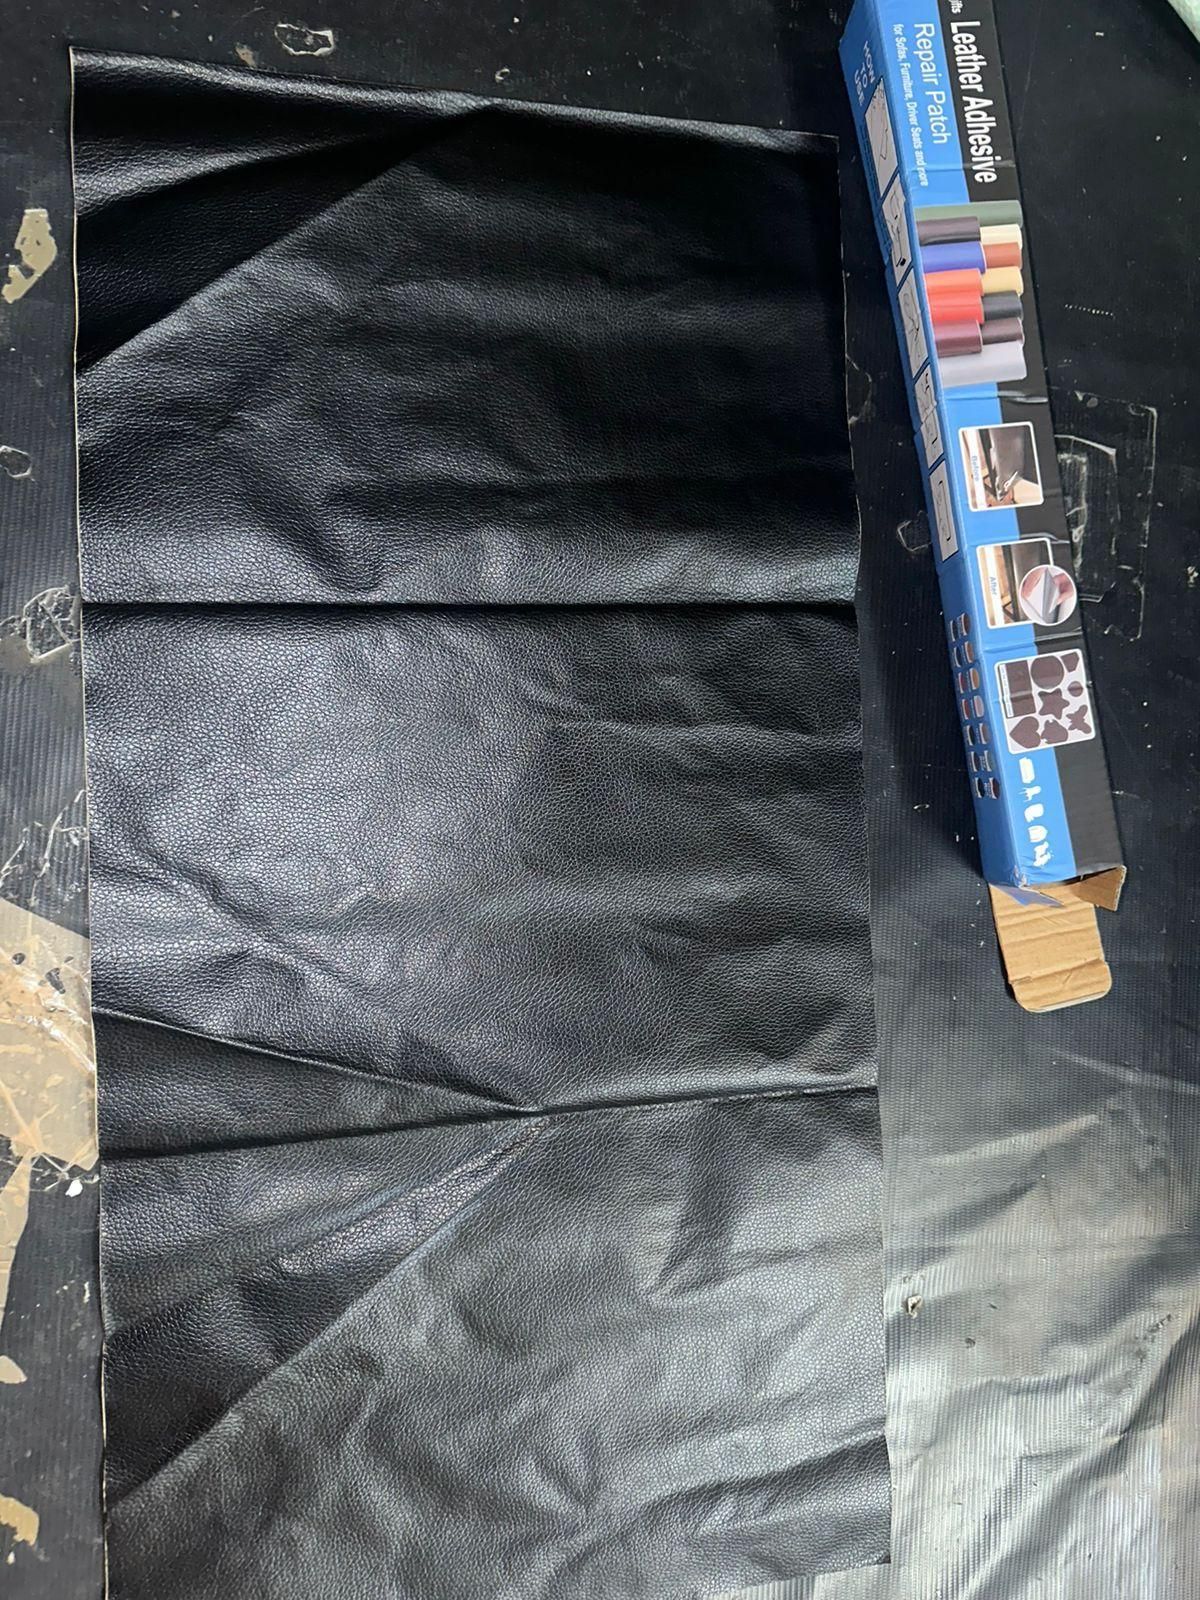 Leather Repair Tape kit ( Black )